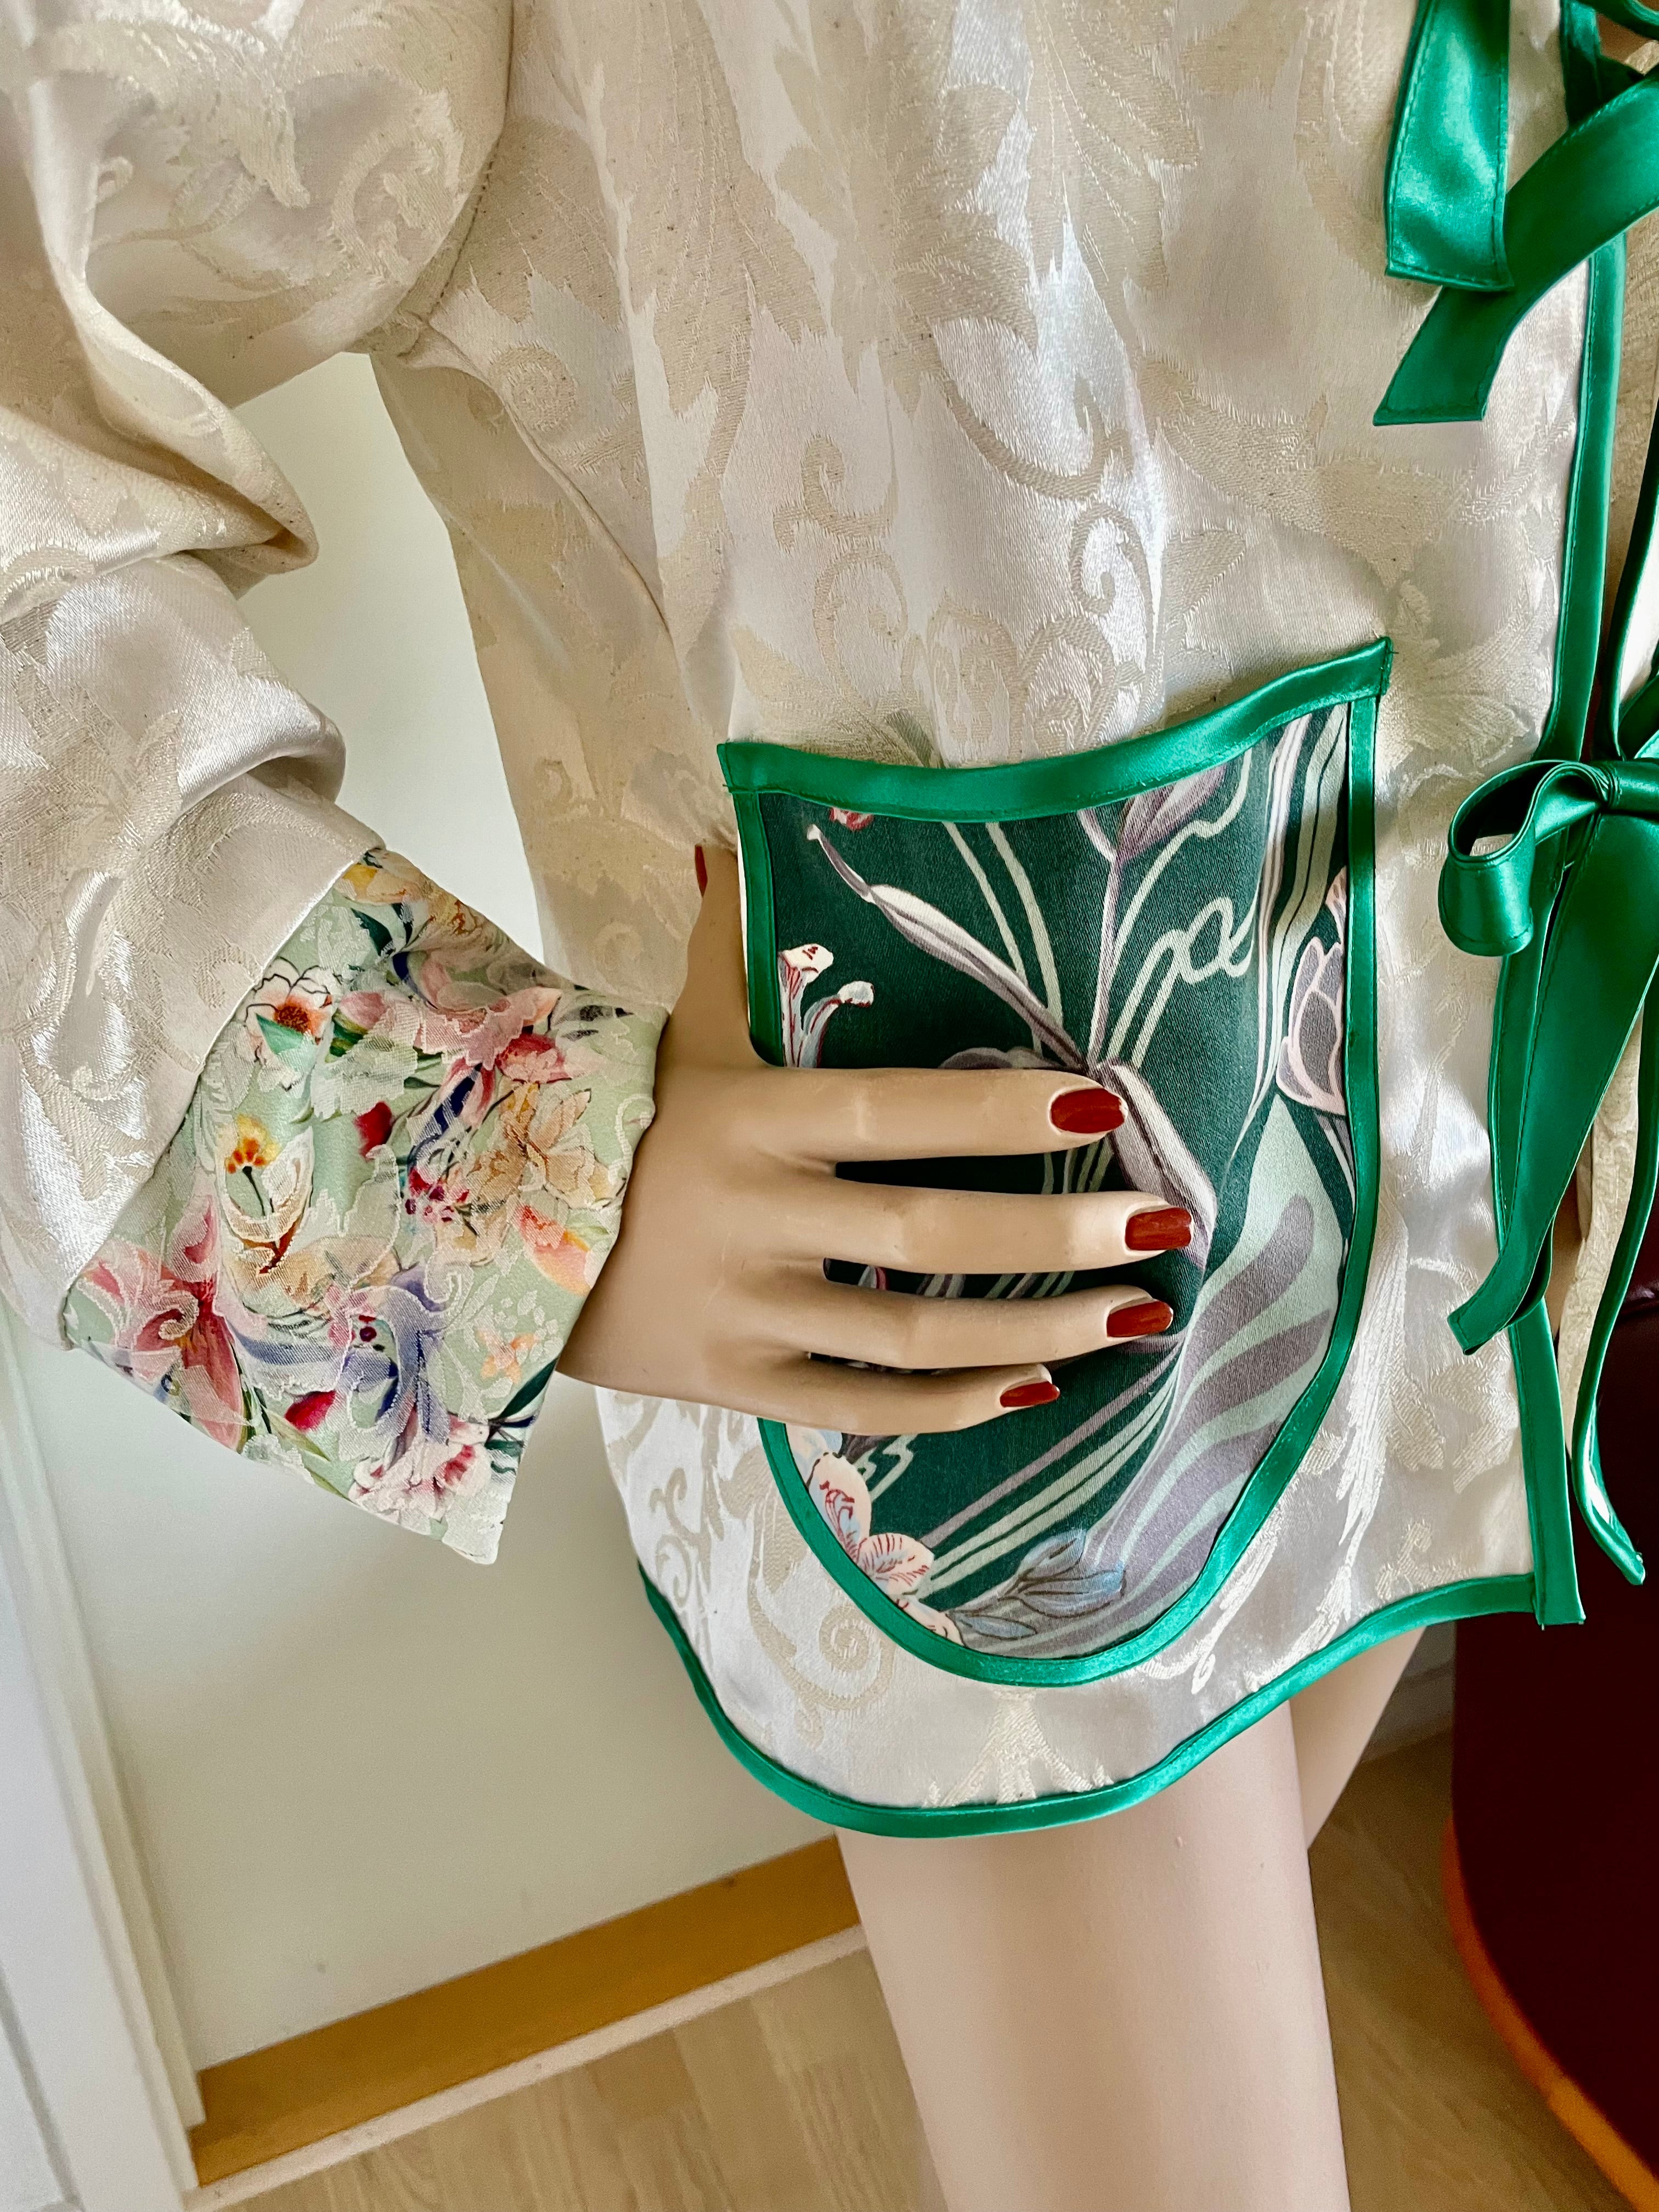 Trendy sommerjakke - Upcyclet i kimonostil